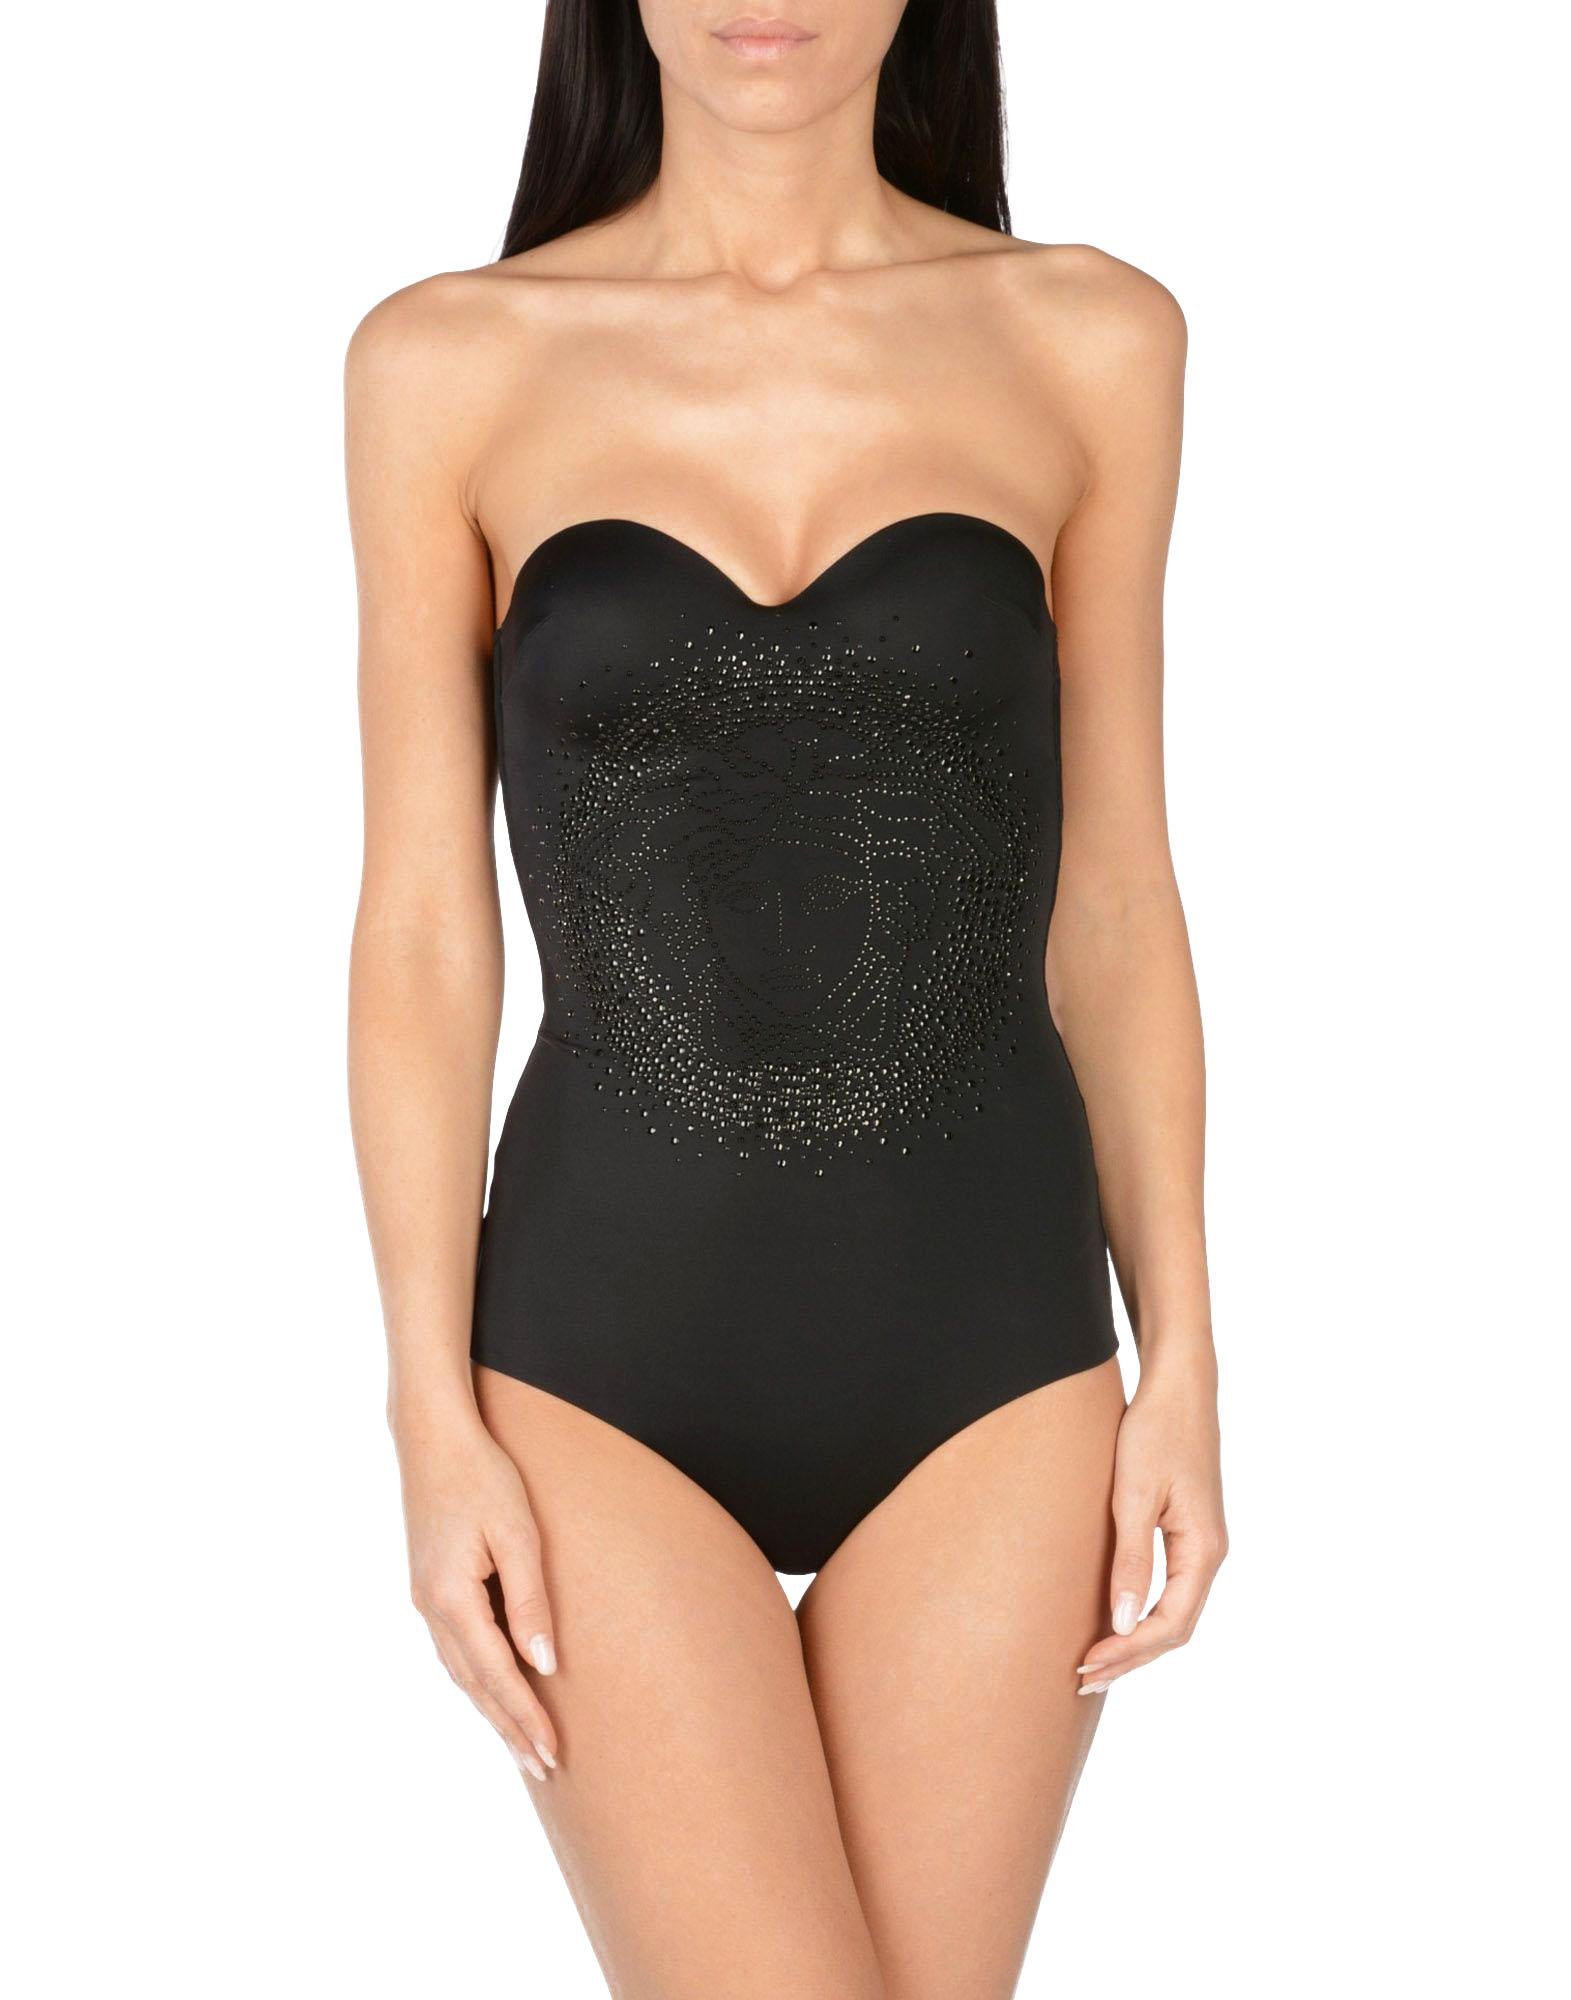 New Versace Schwarzer Jersey verschönert Medusa Badeanzug
Designer-Größen verfügbar - 1,2,4.
Rundes, getauchtes Körbchen, einteiliger Badeanzug mit abnehmbarem Neckholder und verziertem Medusa-Kopf in der Mitte, Stretch-Jersey, vollständig